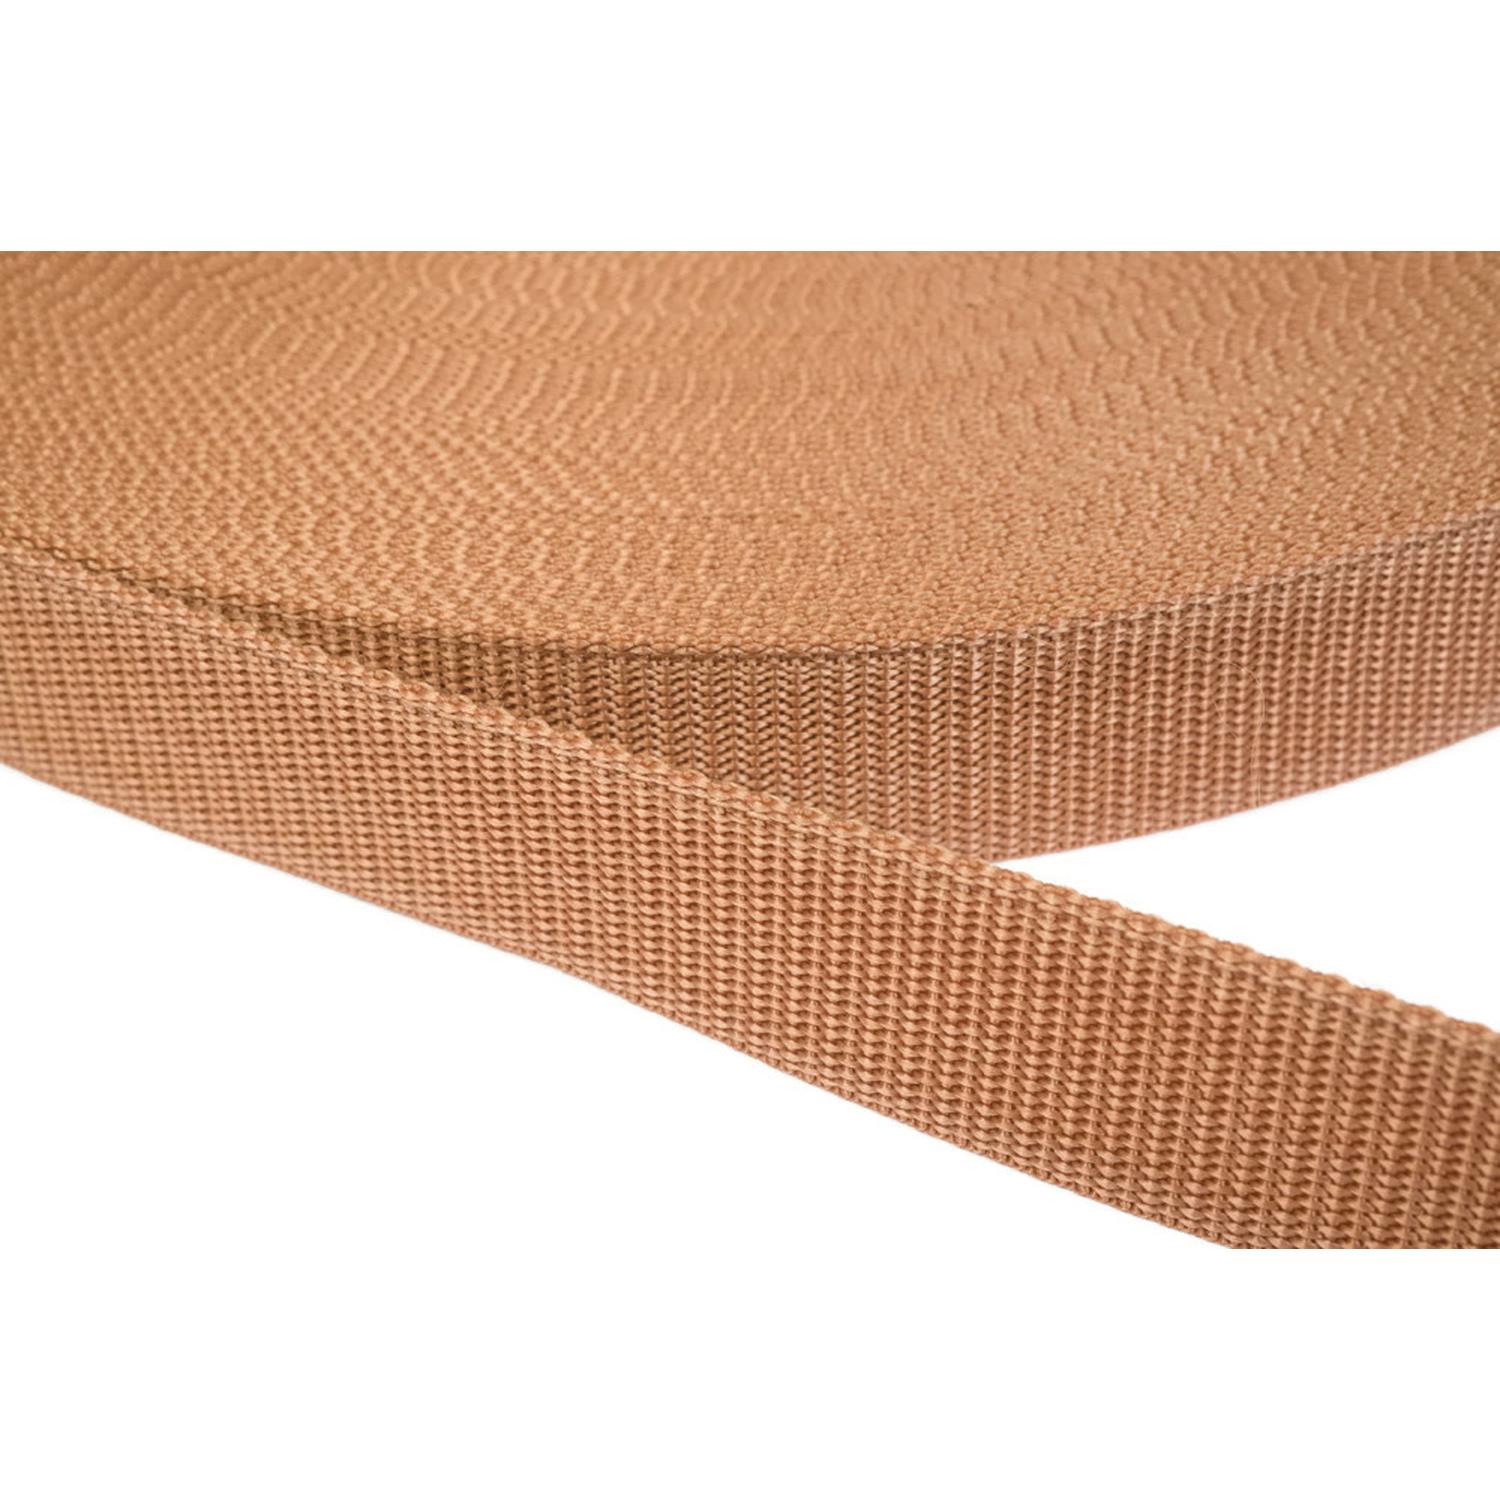 Gurtband 20mm breit aus Polypropylen in 41 Farben 06 - hellbraun 12 Meter